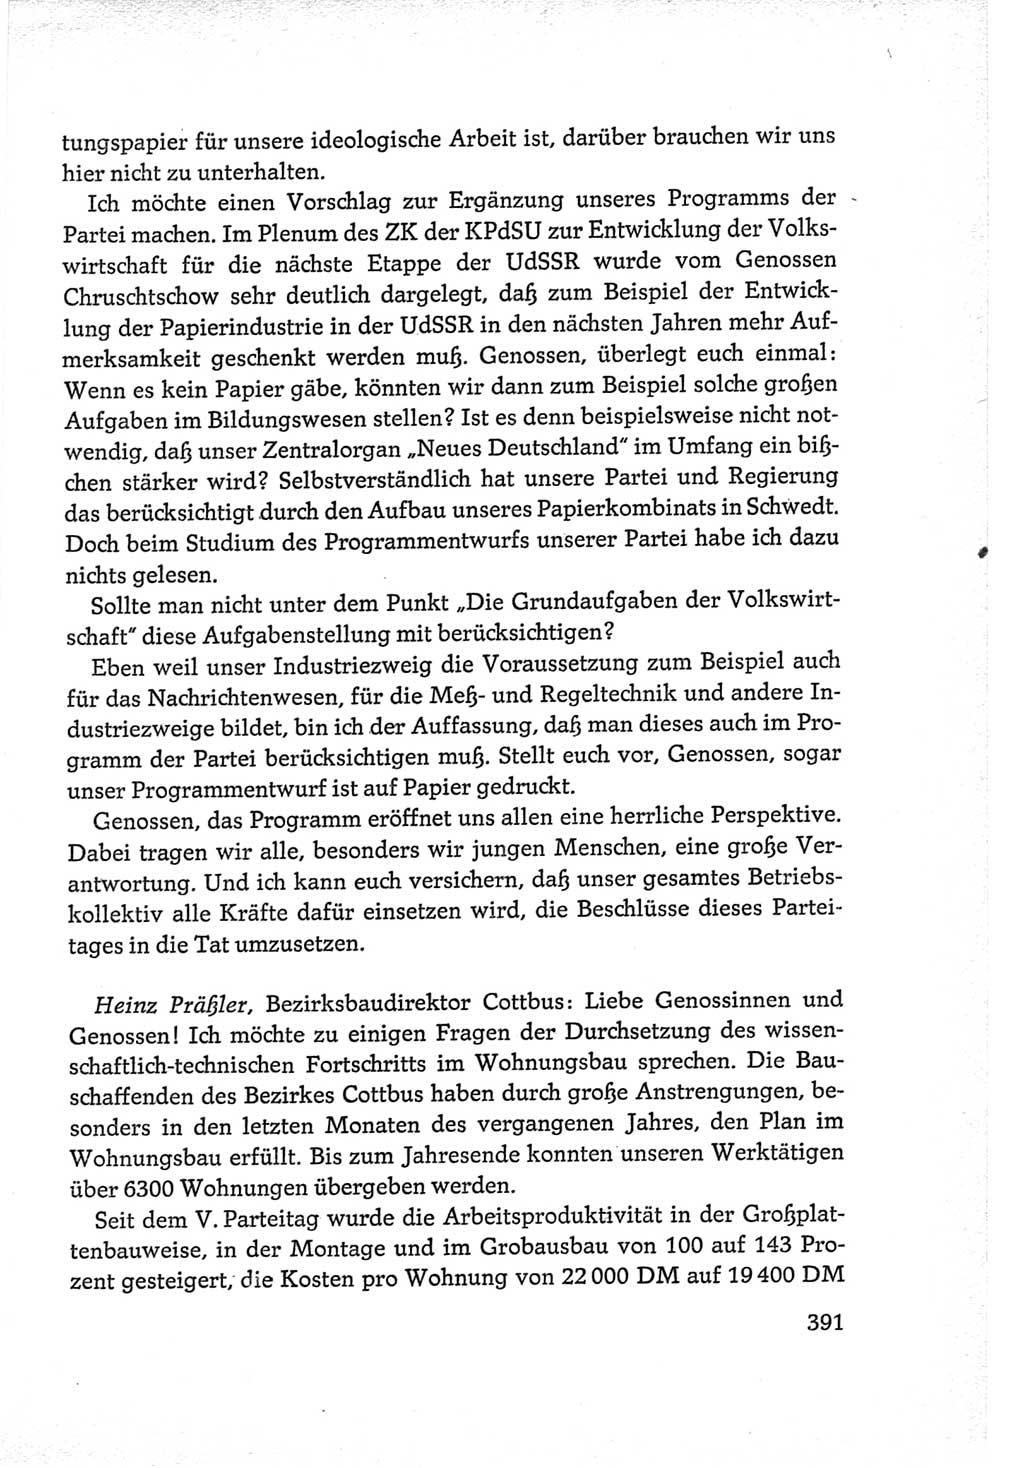 Protokoll der Verhandlungen des Ⅵ. Parteitages der Sozialistischen Einheitspartei Deutschlands (SED) [Deutsche Demokratische Republik (DDR)] 1963, Band Ⅲ, Seite 391 (Prot. Verh. Ⅵ. PT SED DDR 1963, Bd. Ⅲ, S. 391)